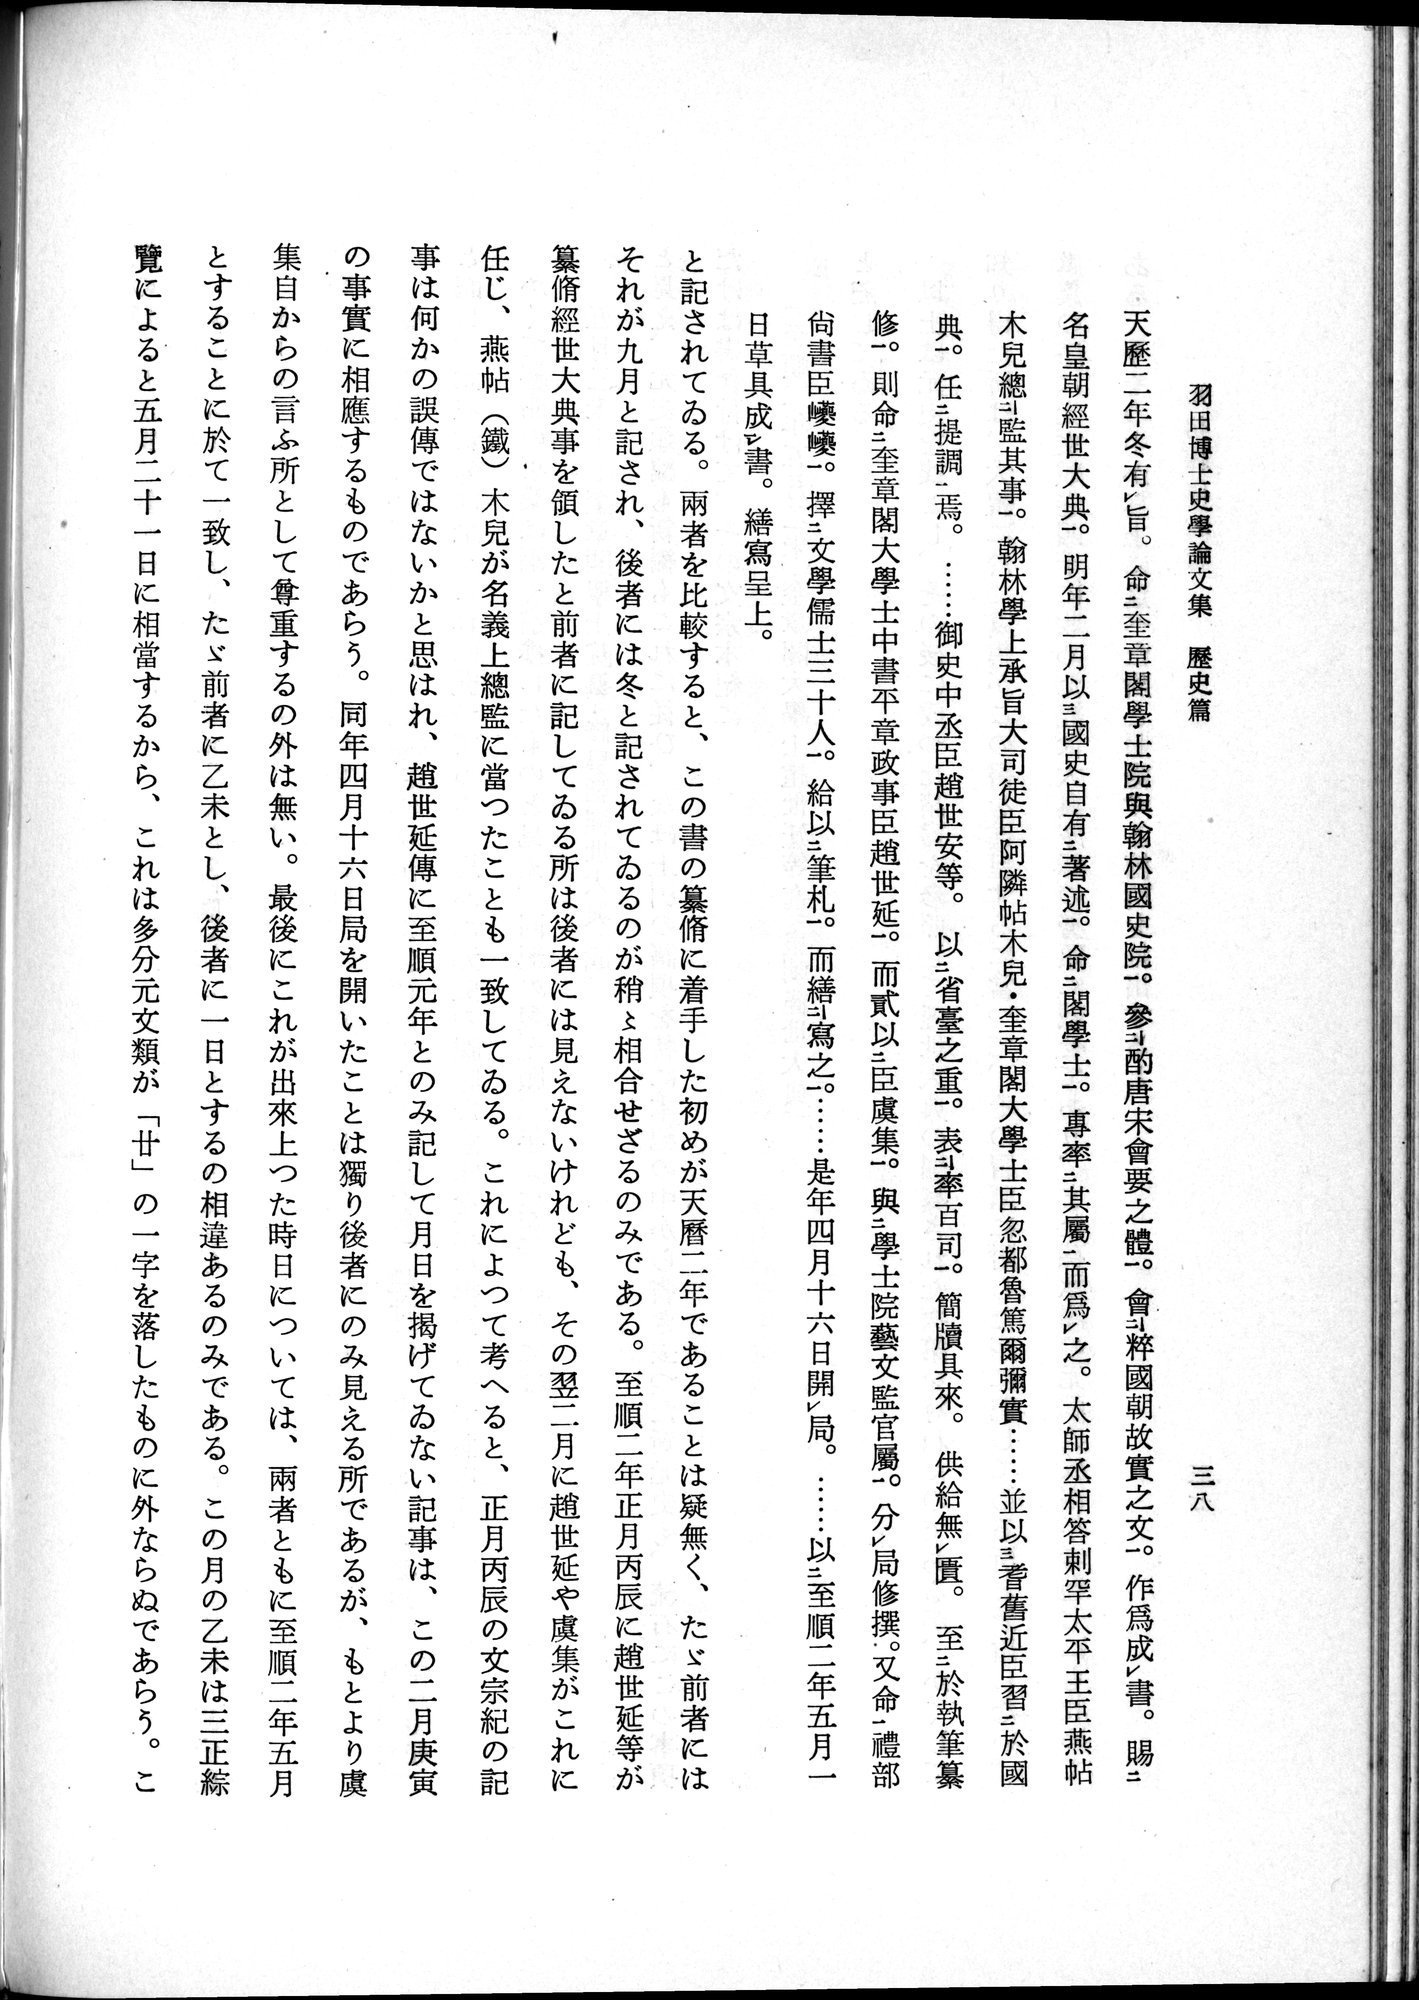 羽田博士史学論文集 : vol.1 / Page 76 (Grayscale High Resolution Image)